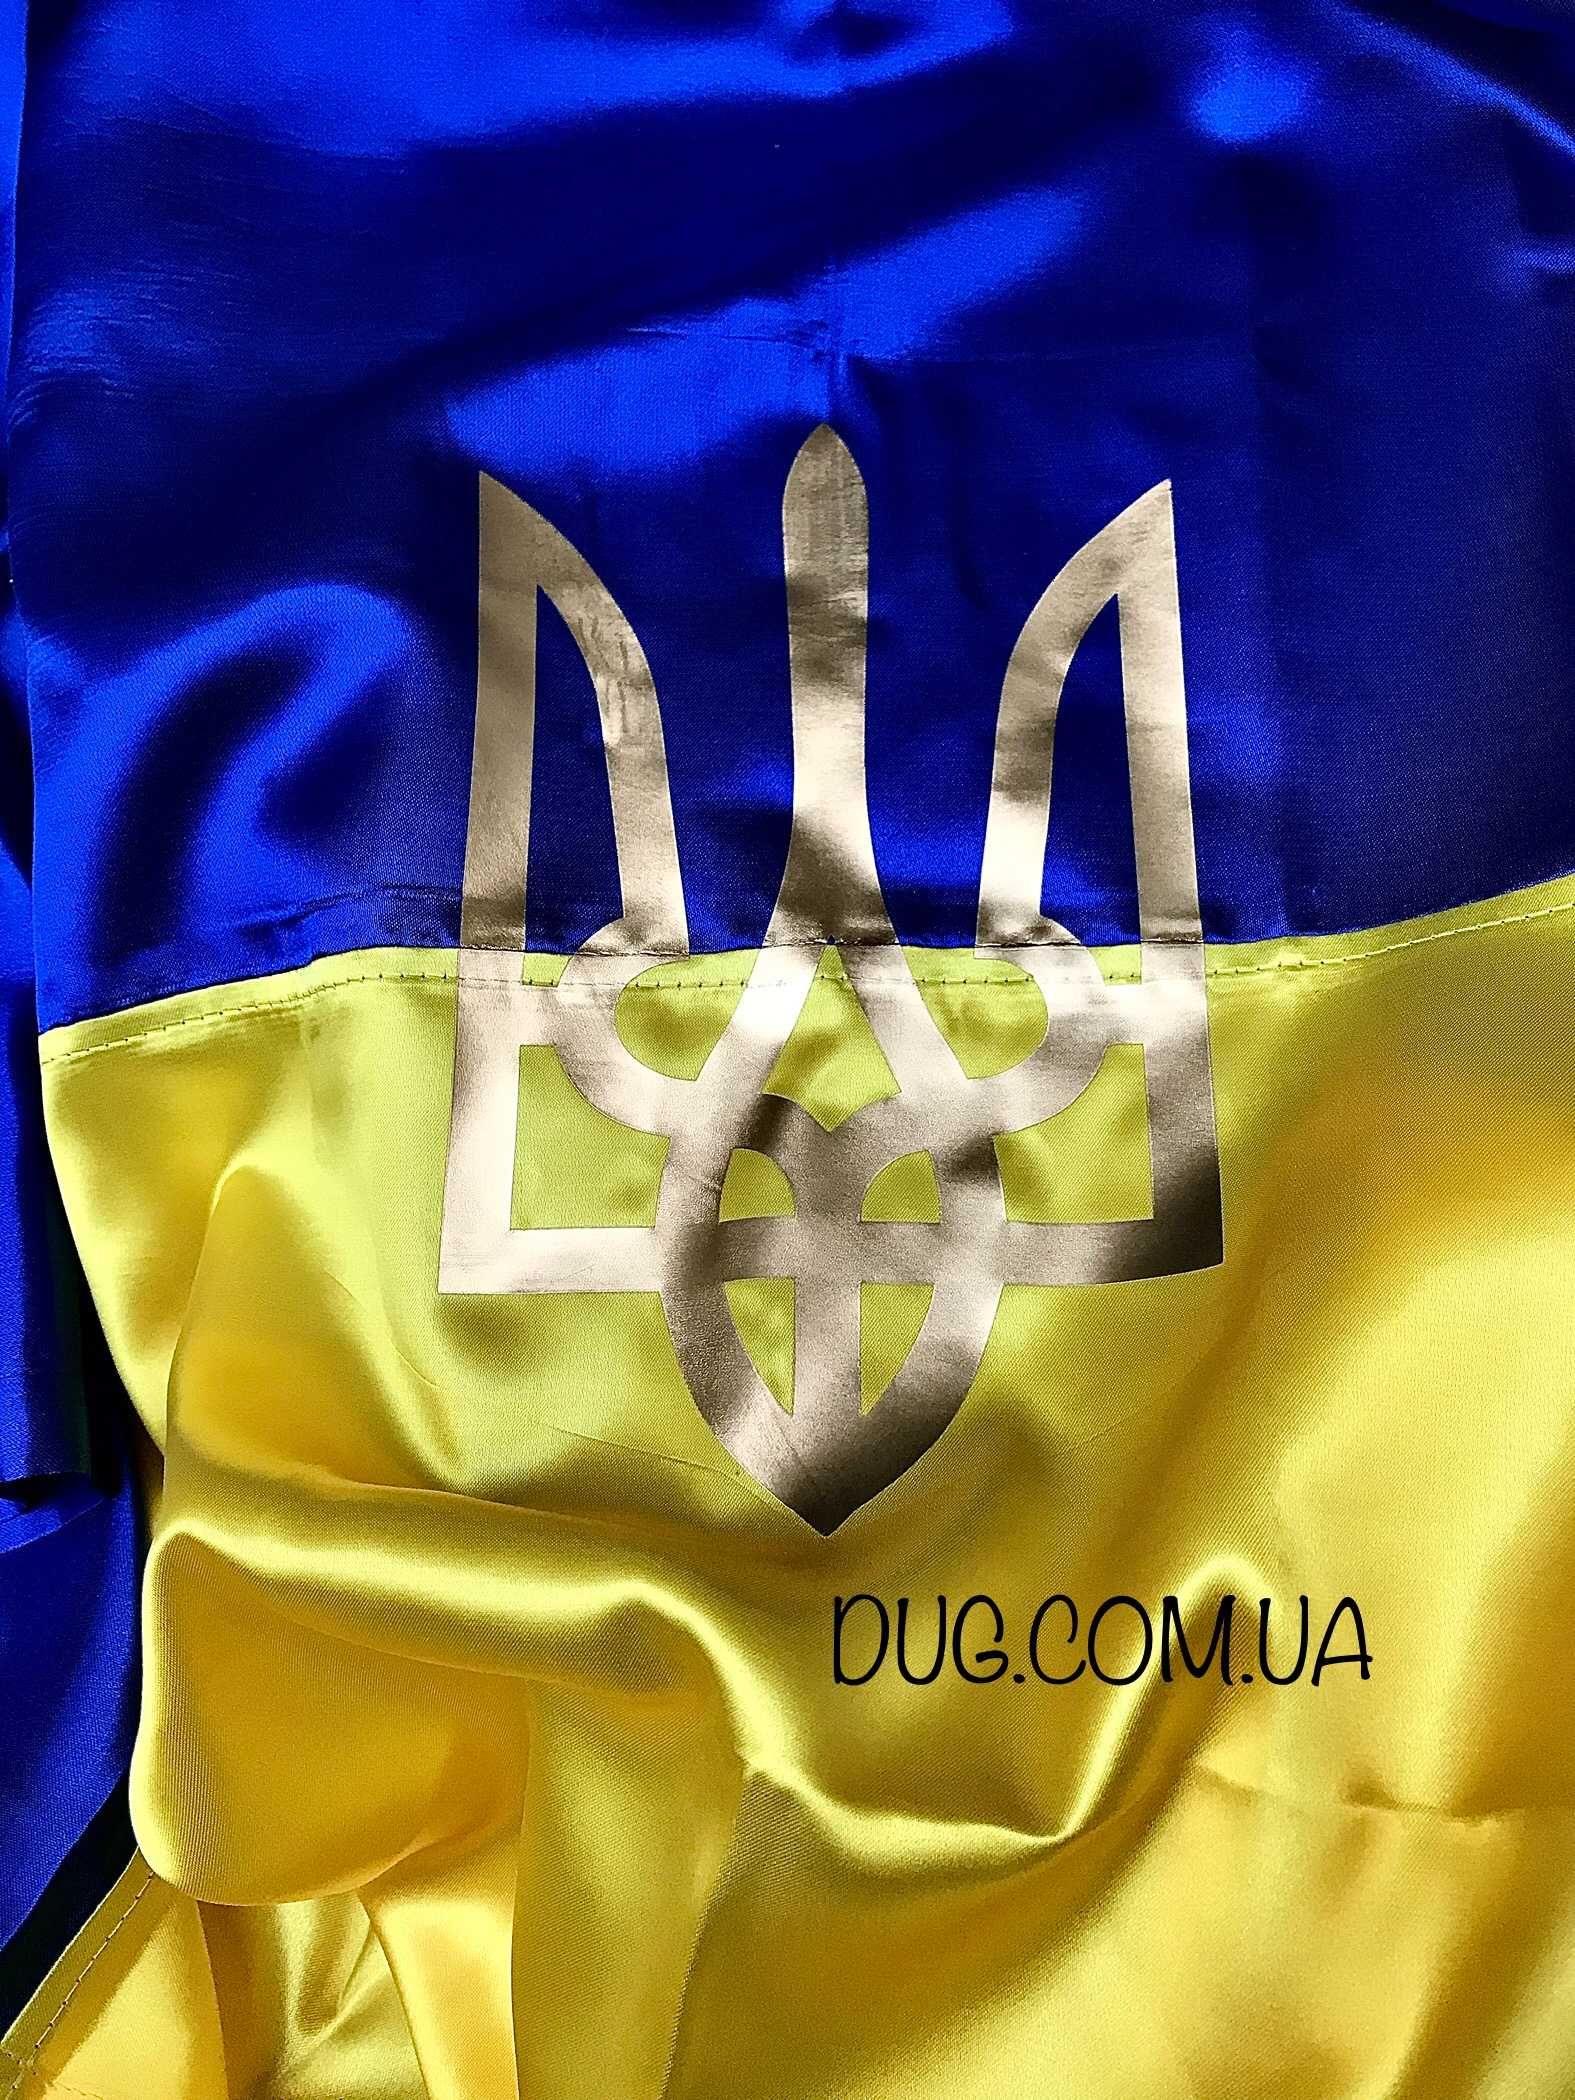 Прапор України|Київ|90×60||Стяг|Флаг Украины купить|Атлас